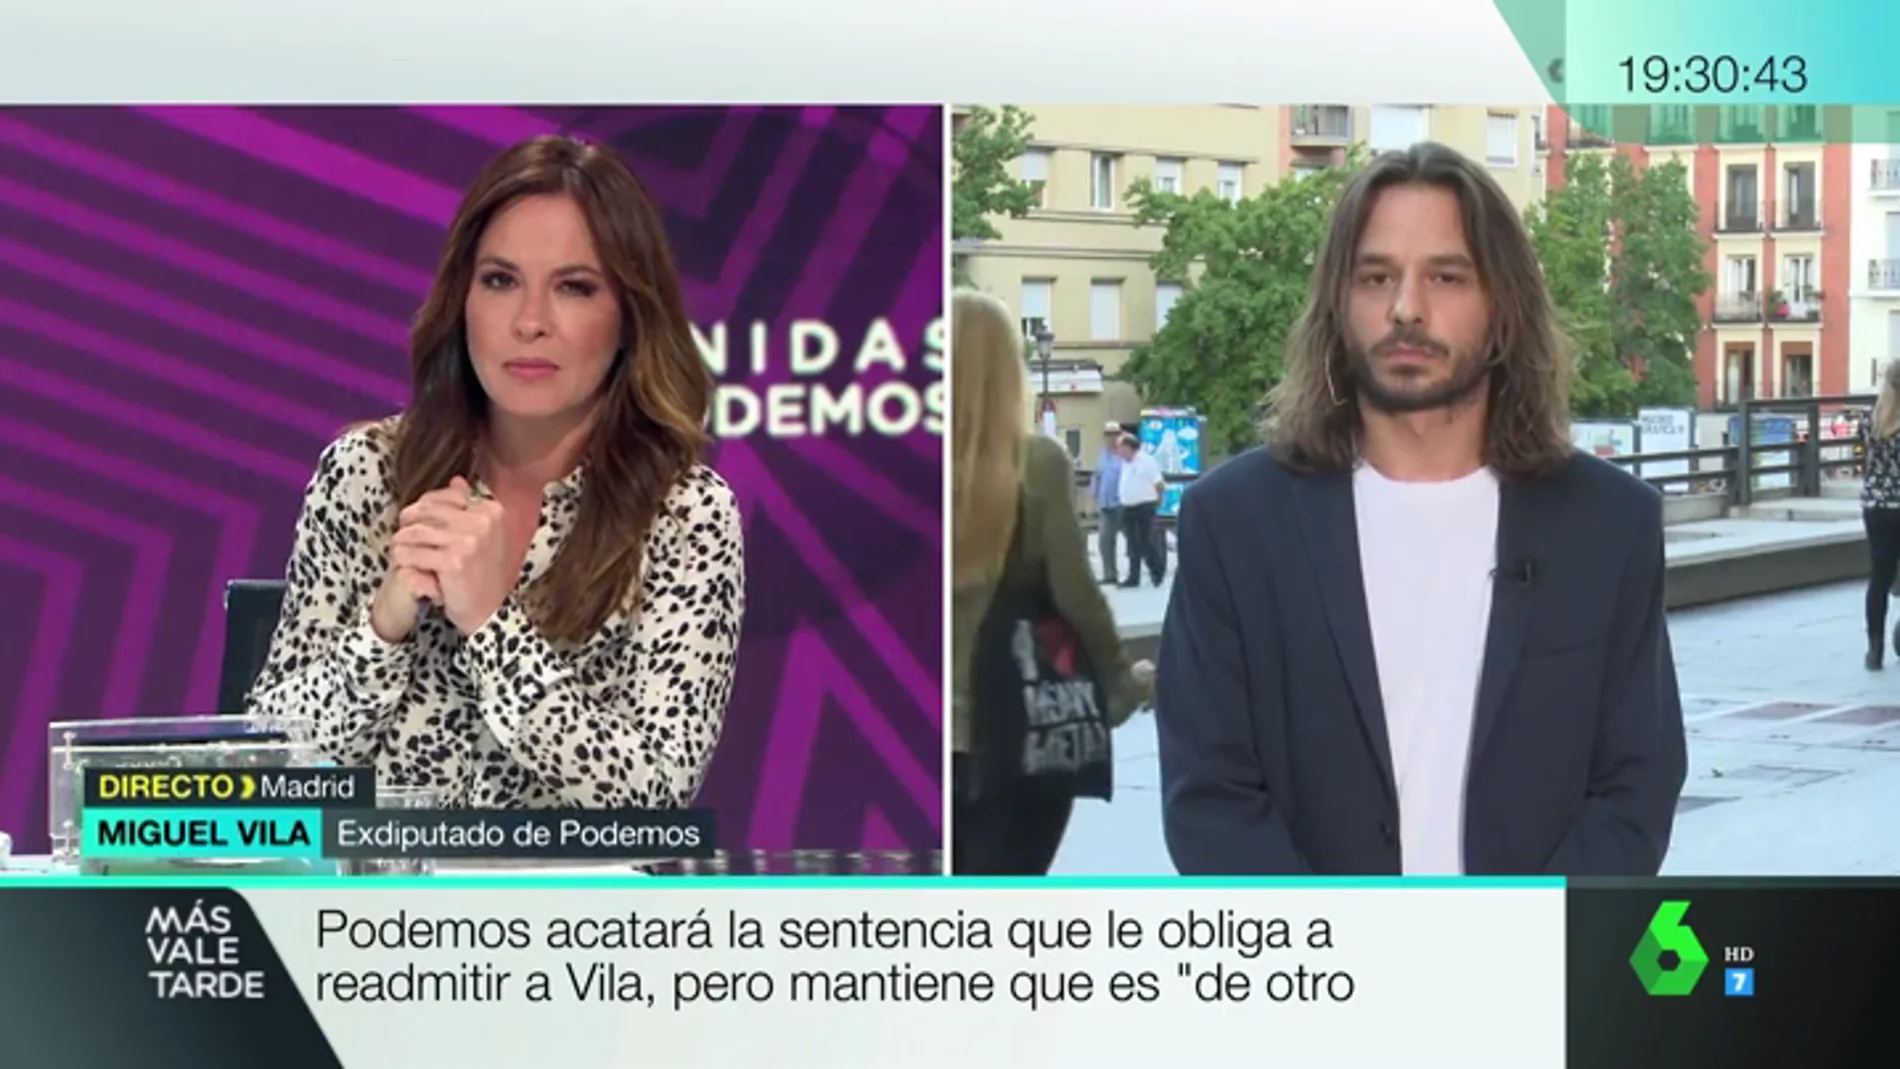 Miguel Vila, tras considerarse 'nulo' su despido: "Cuando pisotean mis derechos me da igual que la empresa se llame Podemos, los voy a defender"